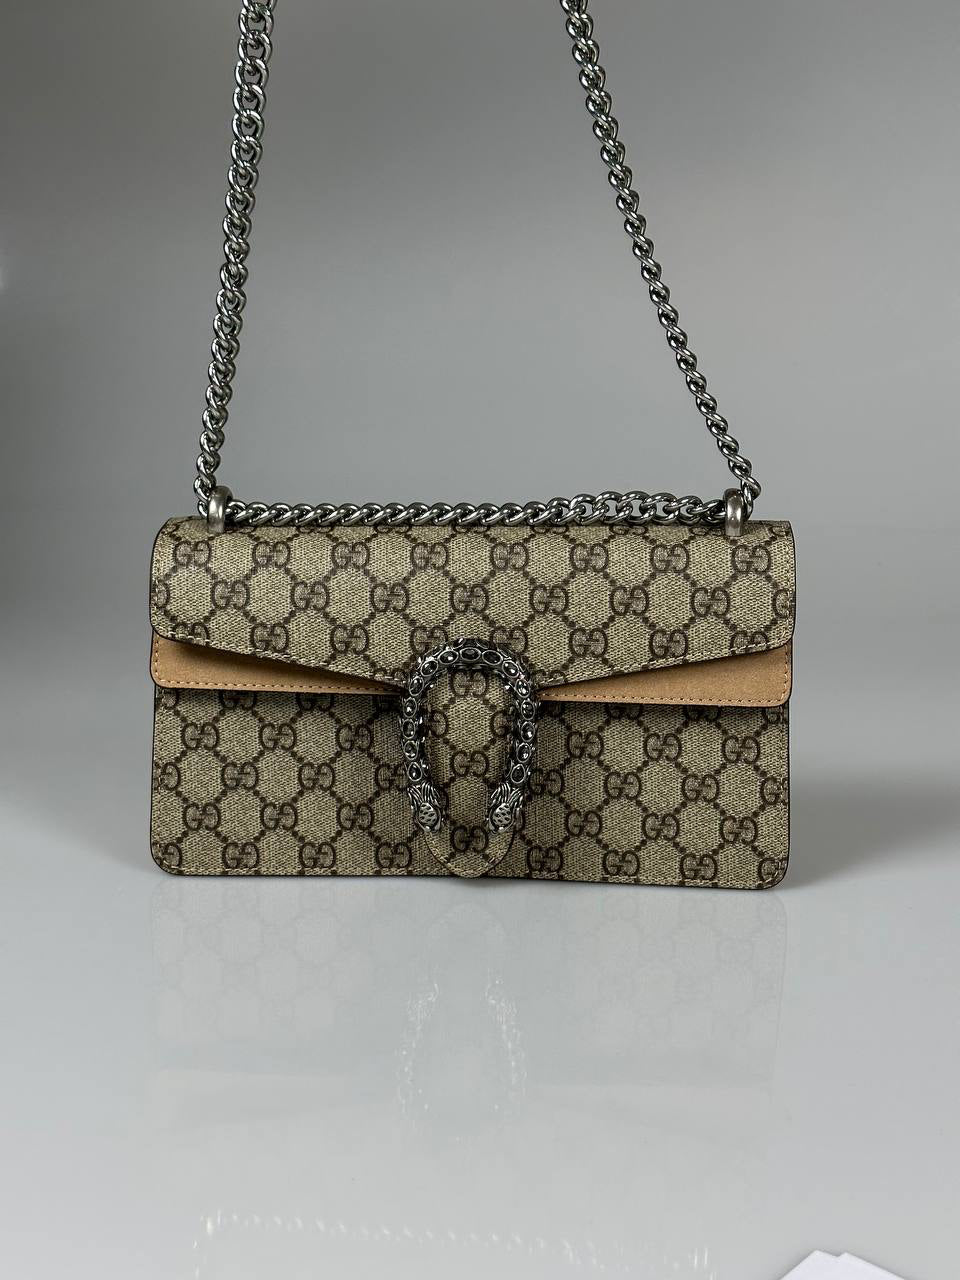 Gucci Dionysus Embellished crossbody bag